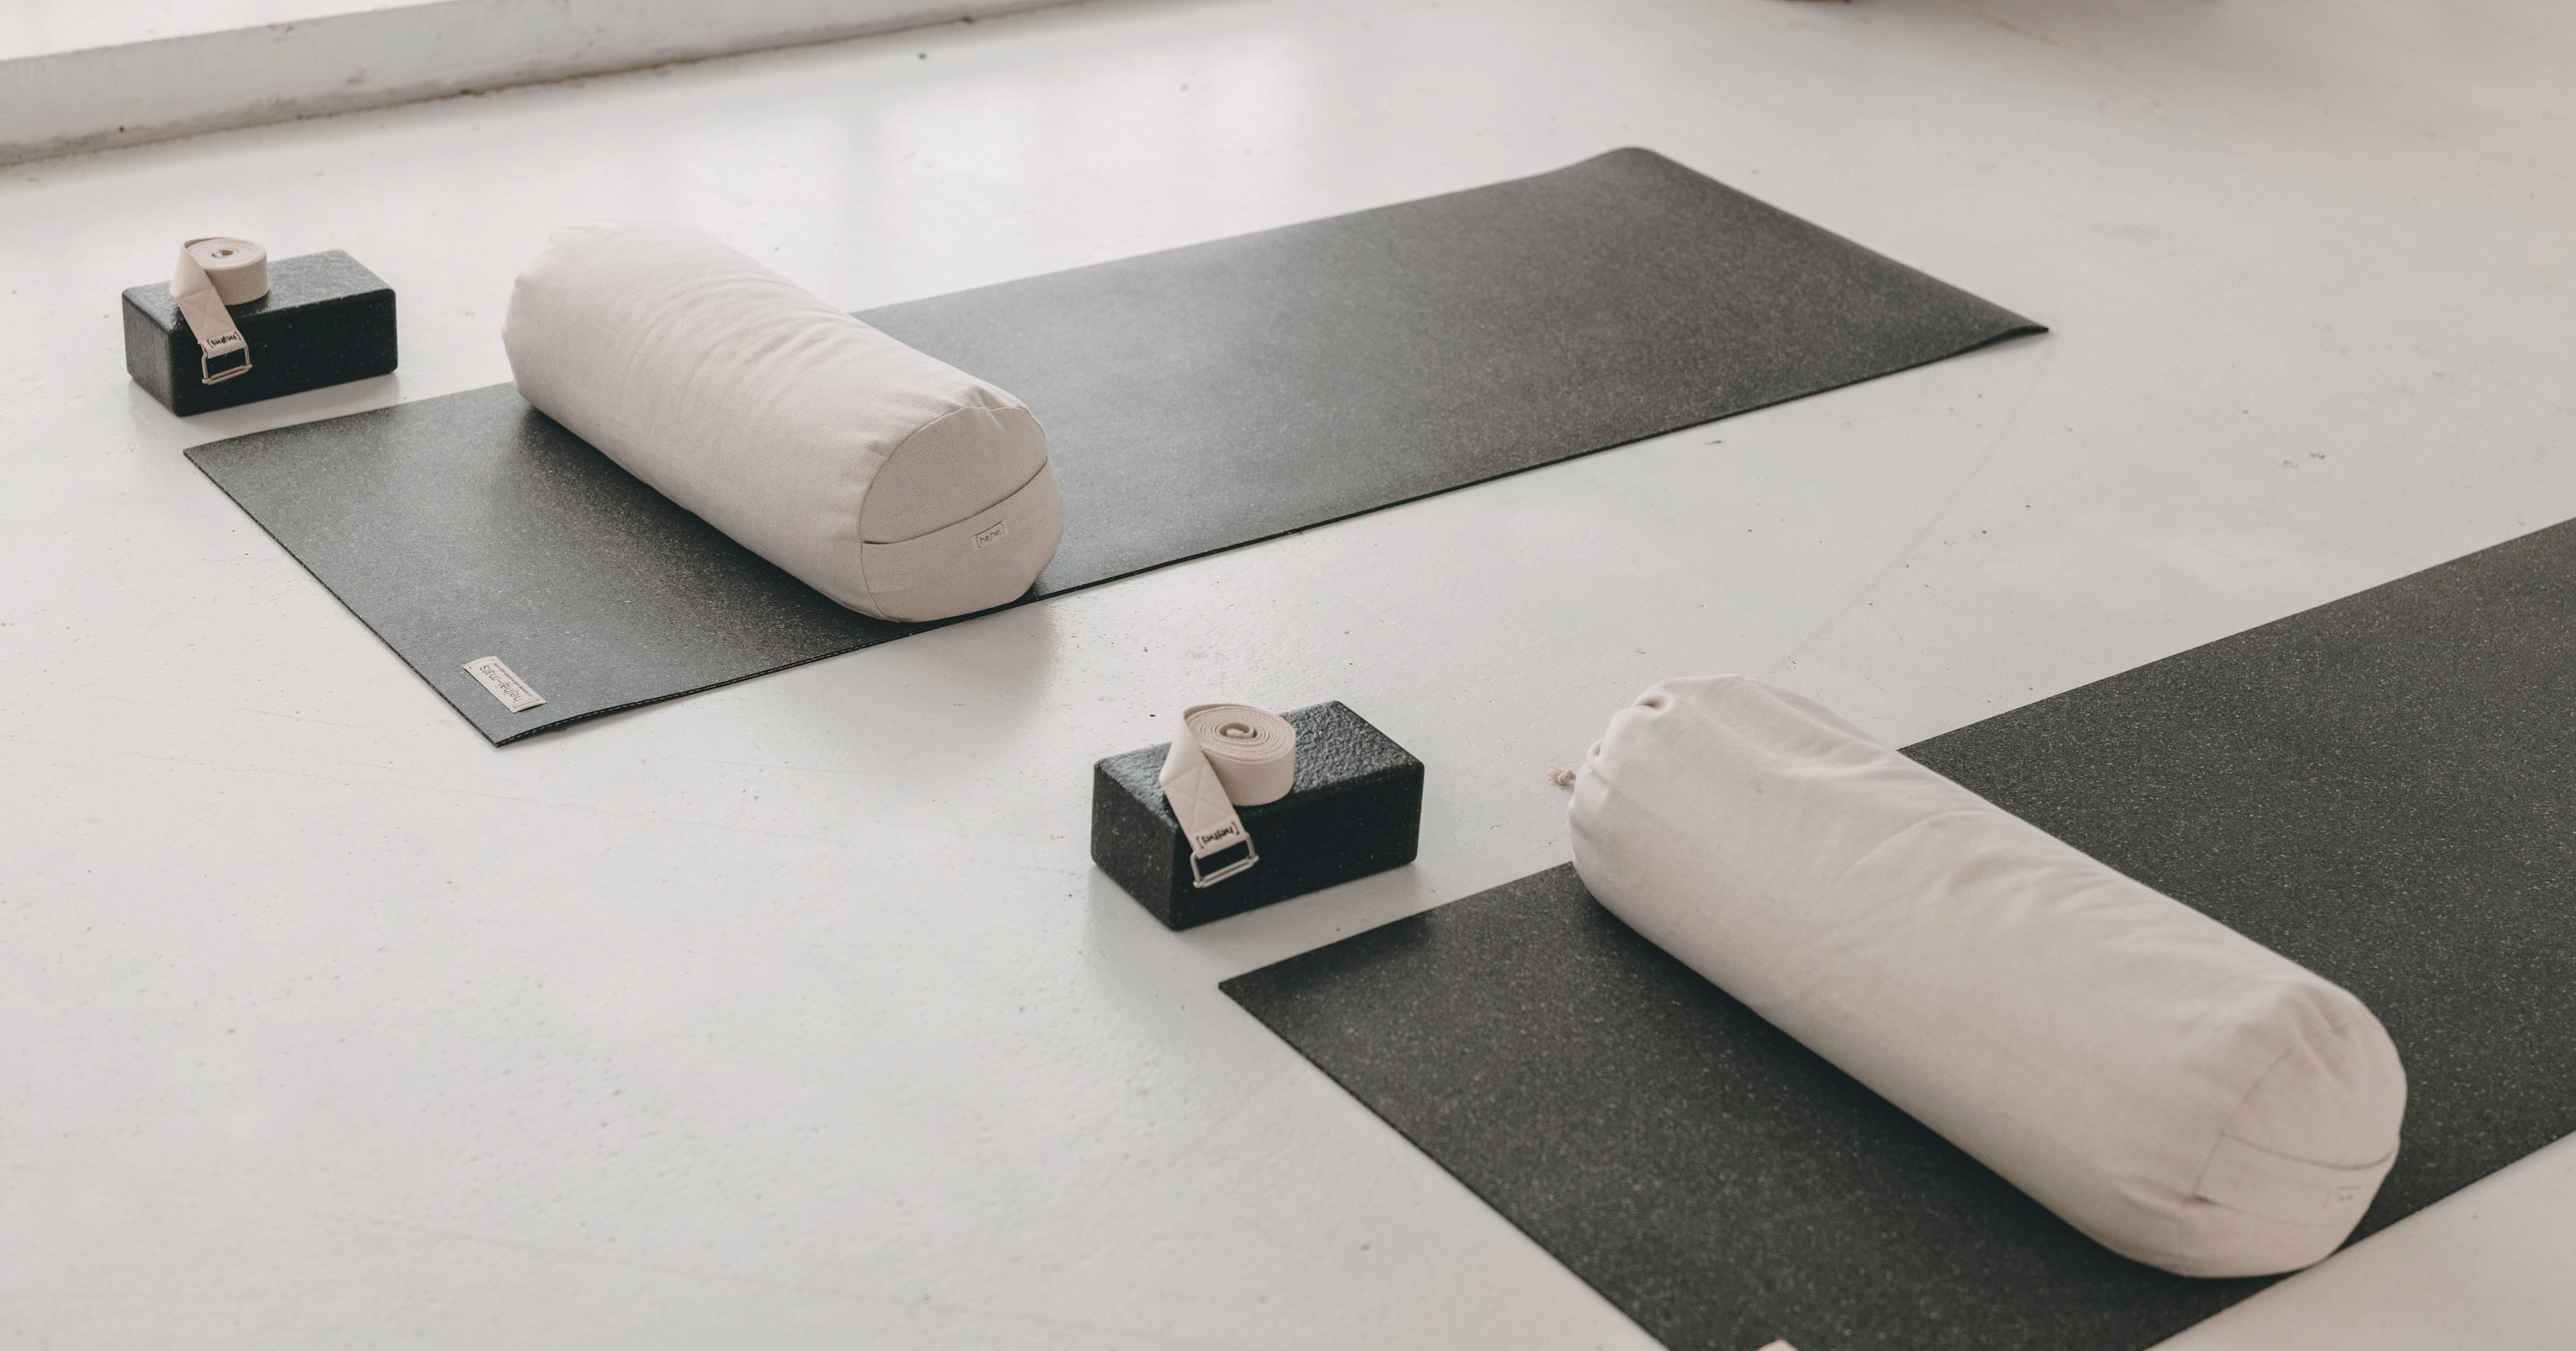 Dein Yoga Platz ist schon fertig gerichtet mit sehr hochwertigem Yoga Equipment